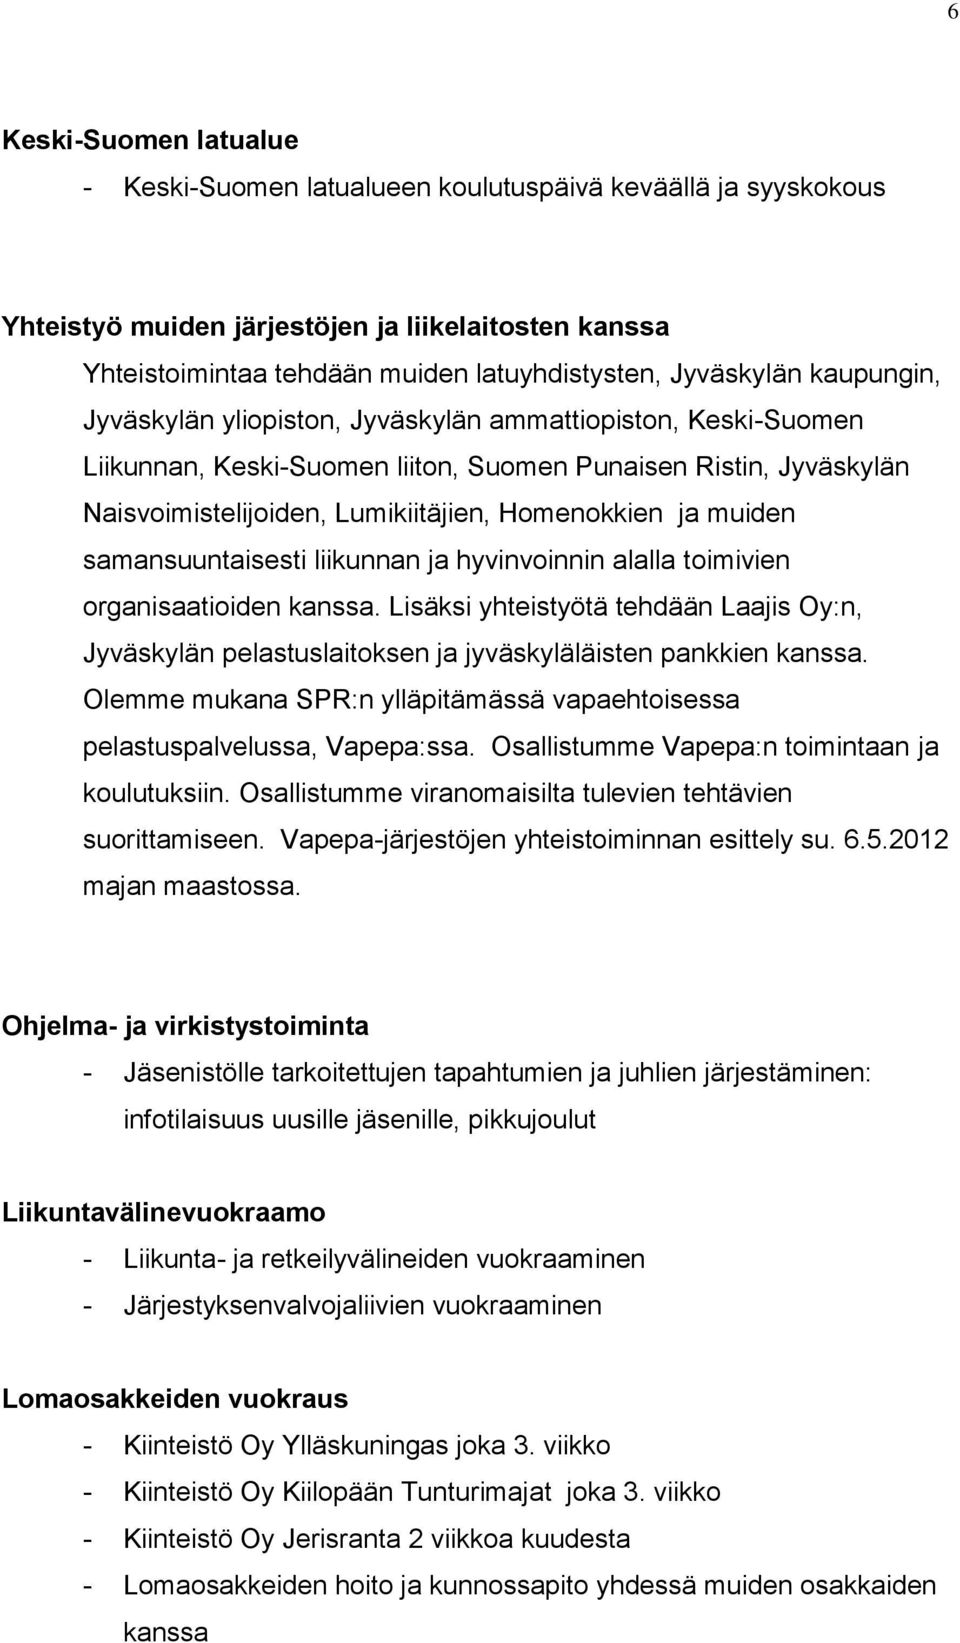 samansuuntaisesti liikunnan ja hyvinvoinnin alalla toimivien organisaatioiden kanssa. Lisäksi yhteistyötä tehdään Laajis Oy:n, Jyväskylän pelastuslaitoksen ja jyväskyläläisten pankkien kanssa.